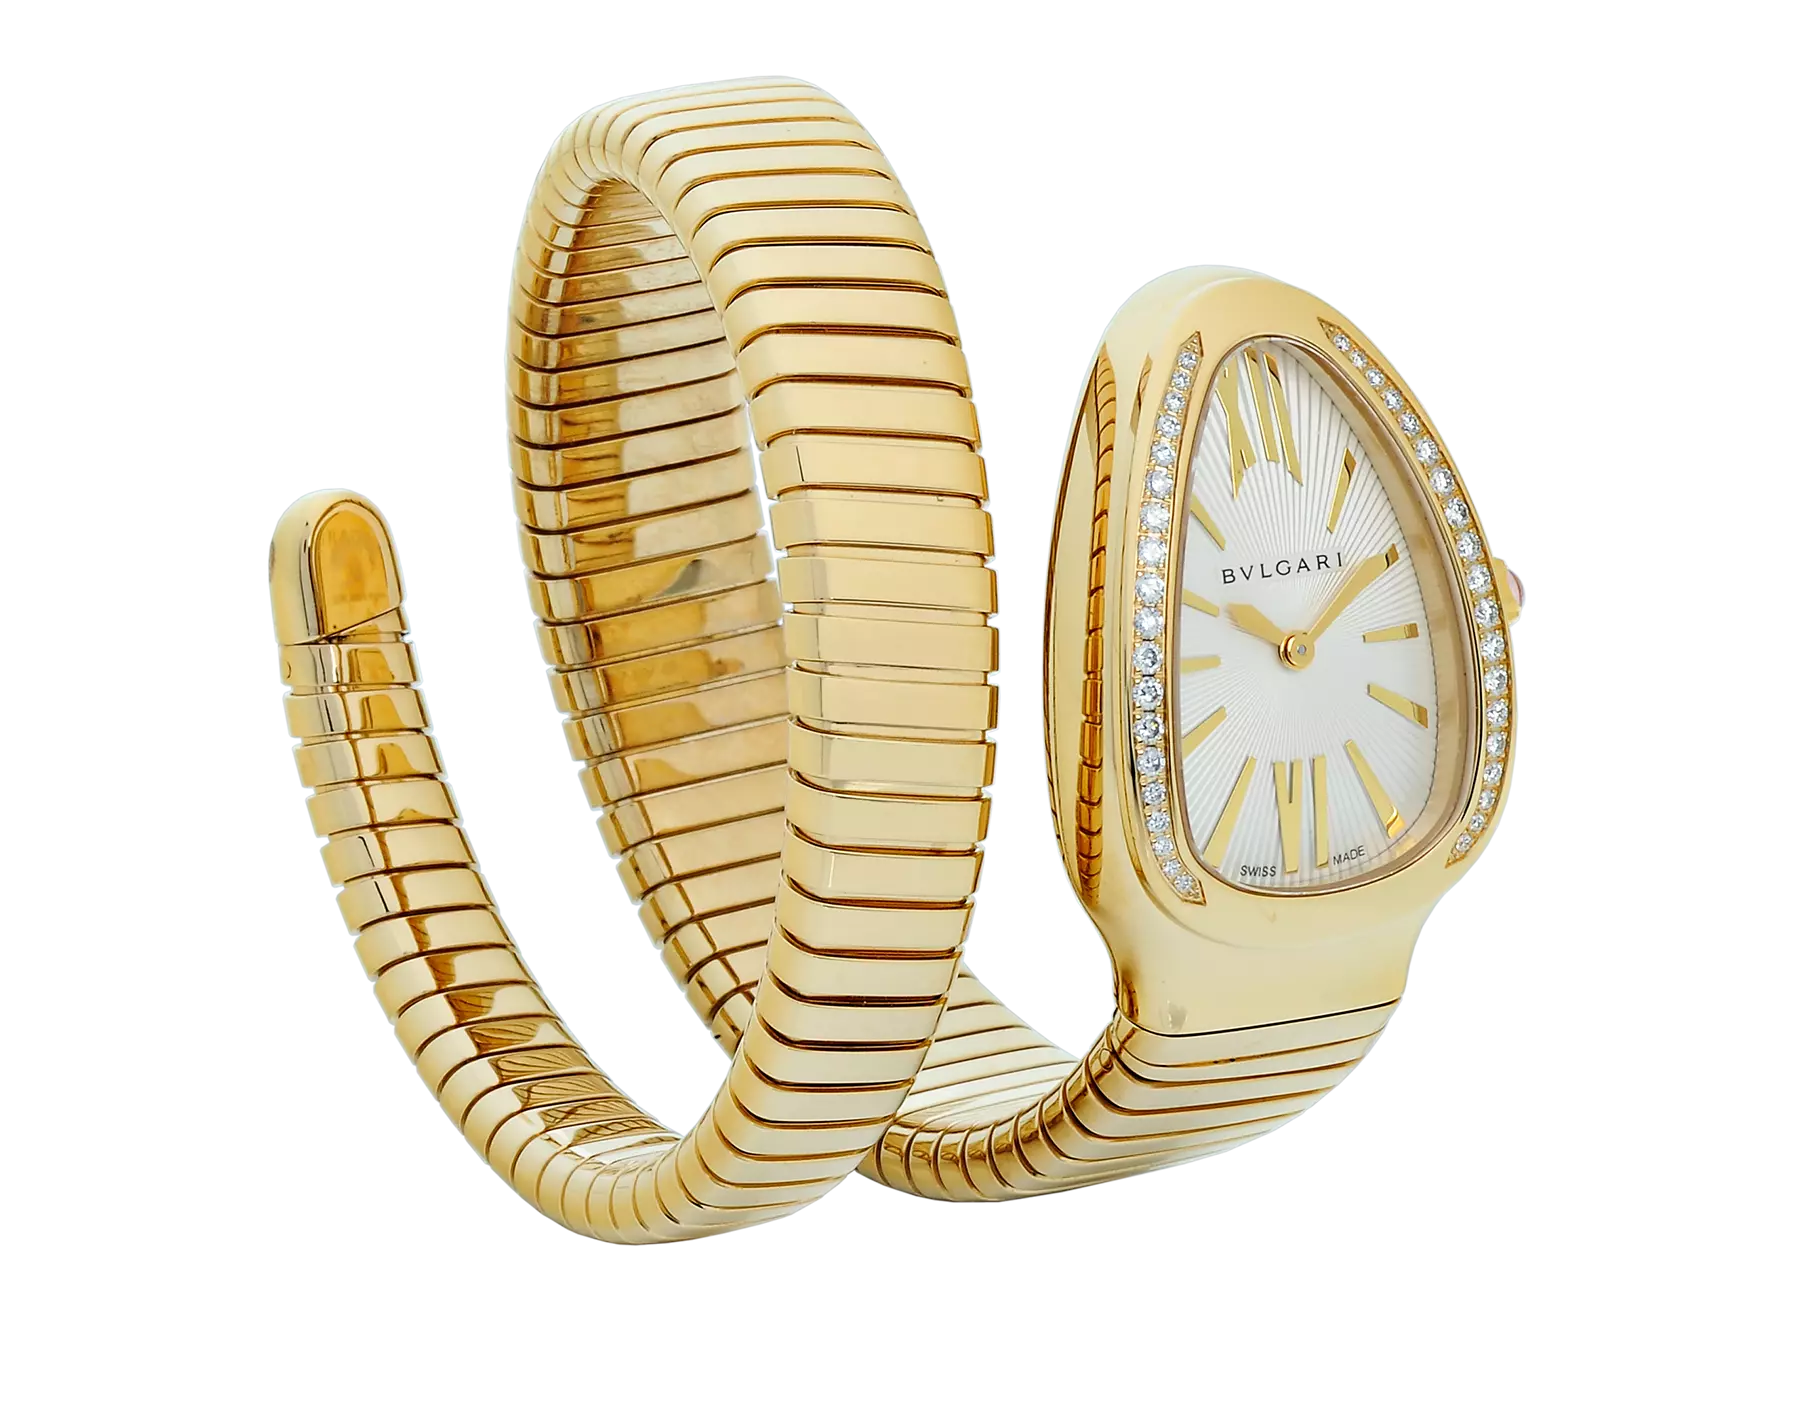 "¡Mira y actúa!" Artículo de subasta - Lote 3: Serpiente dorada de Bulgari - Relojes Time and Tide